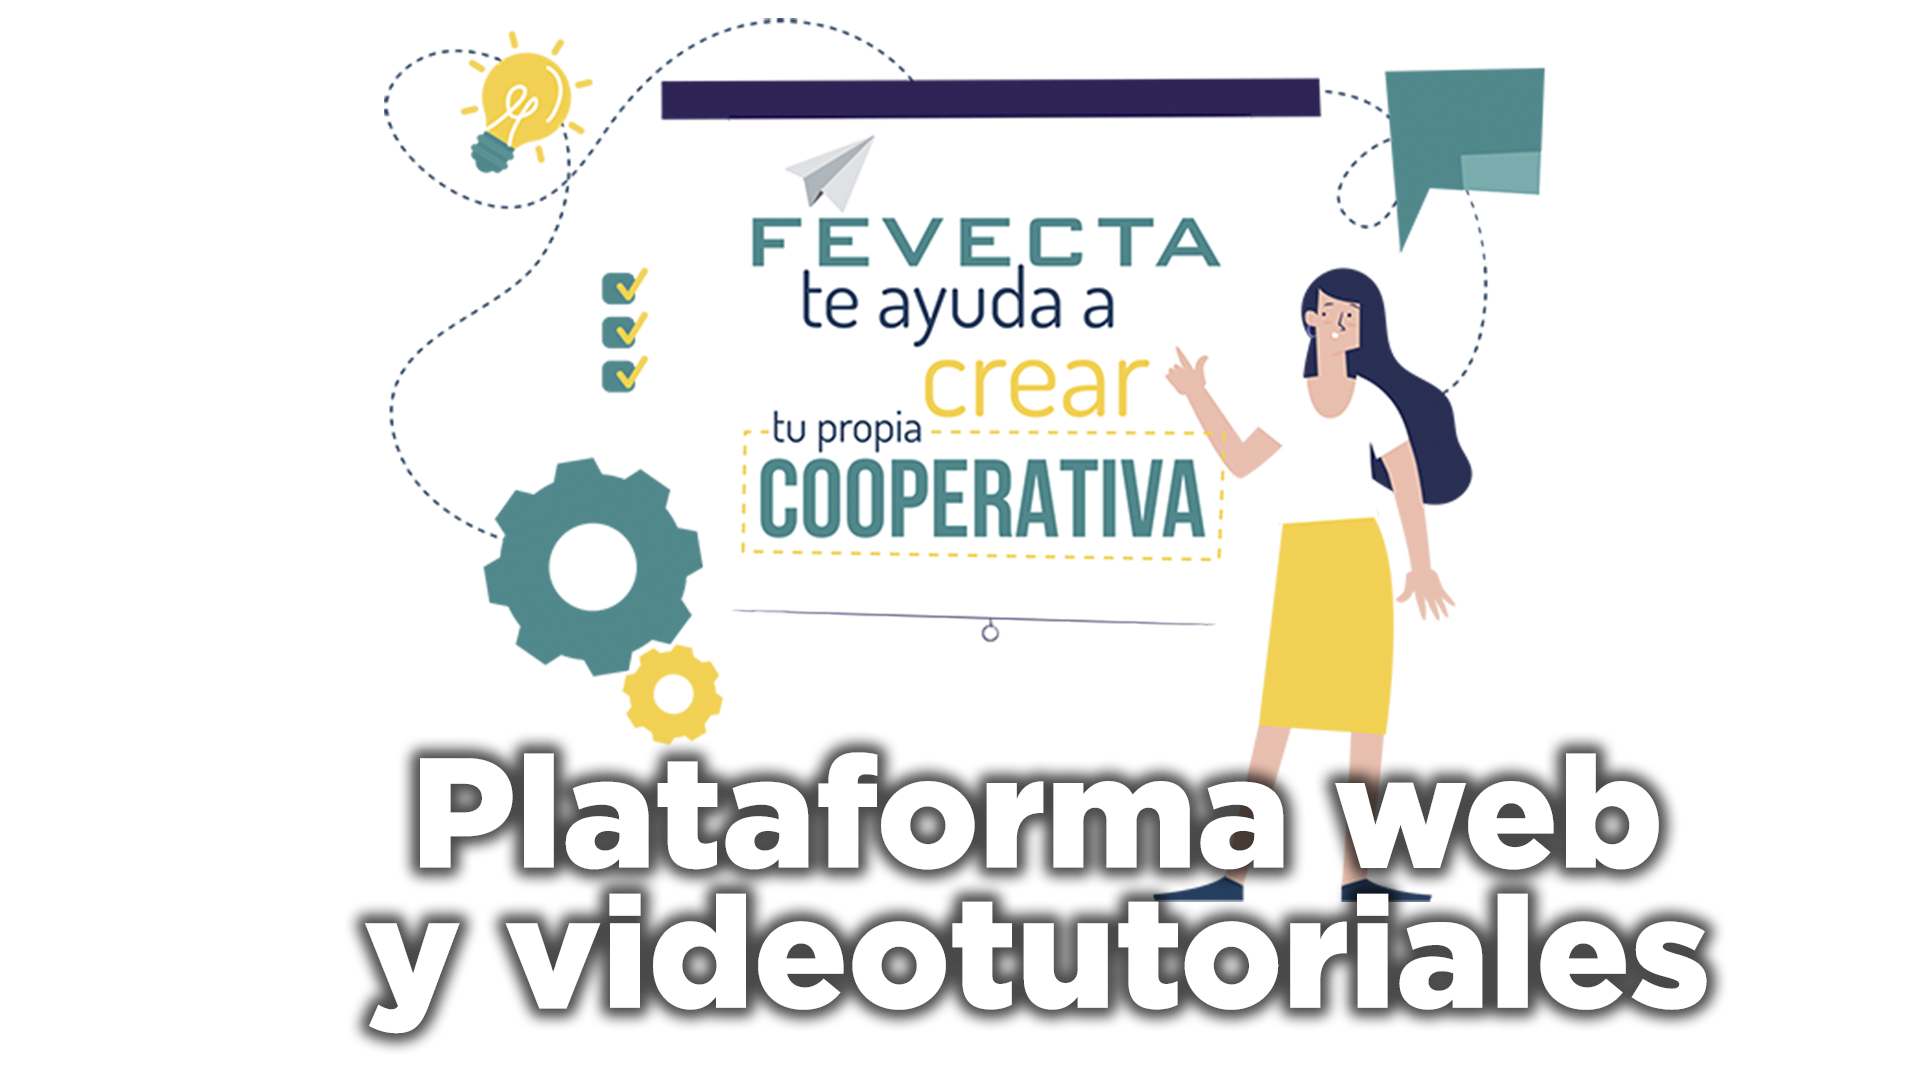 Plataforma y videotutoriales para emprender en cooperativa